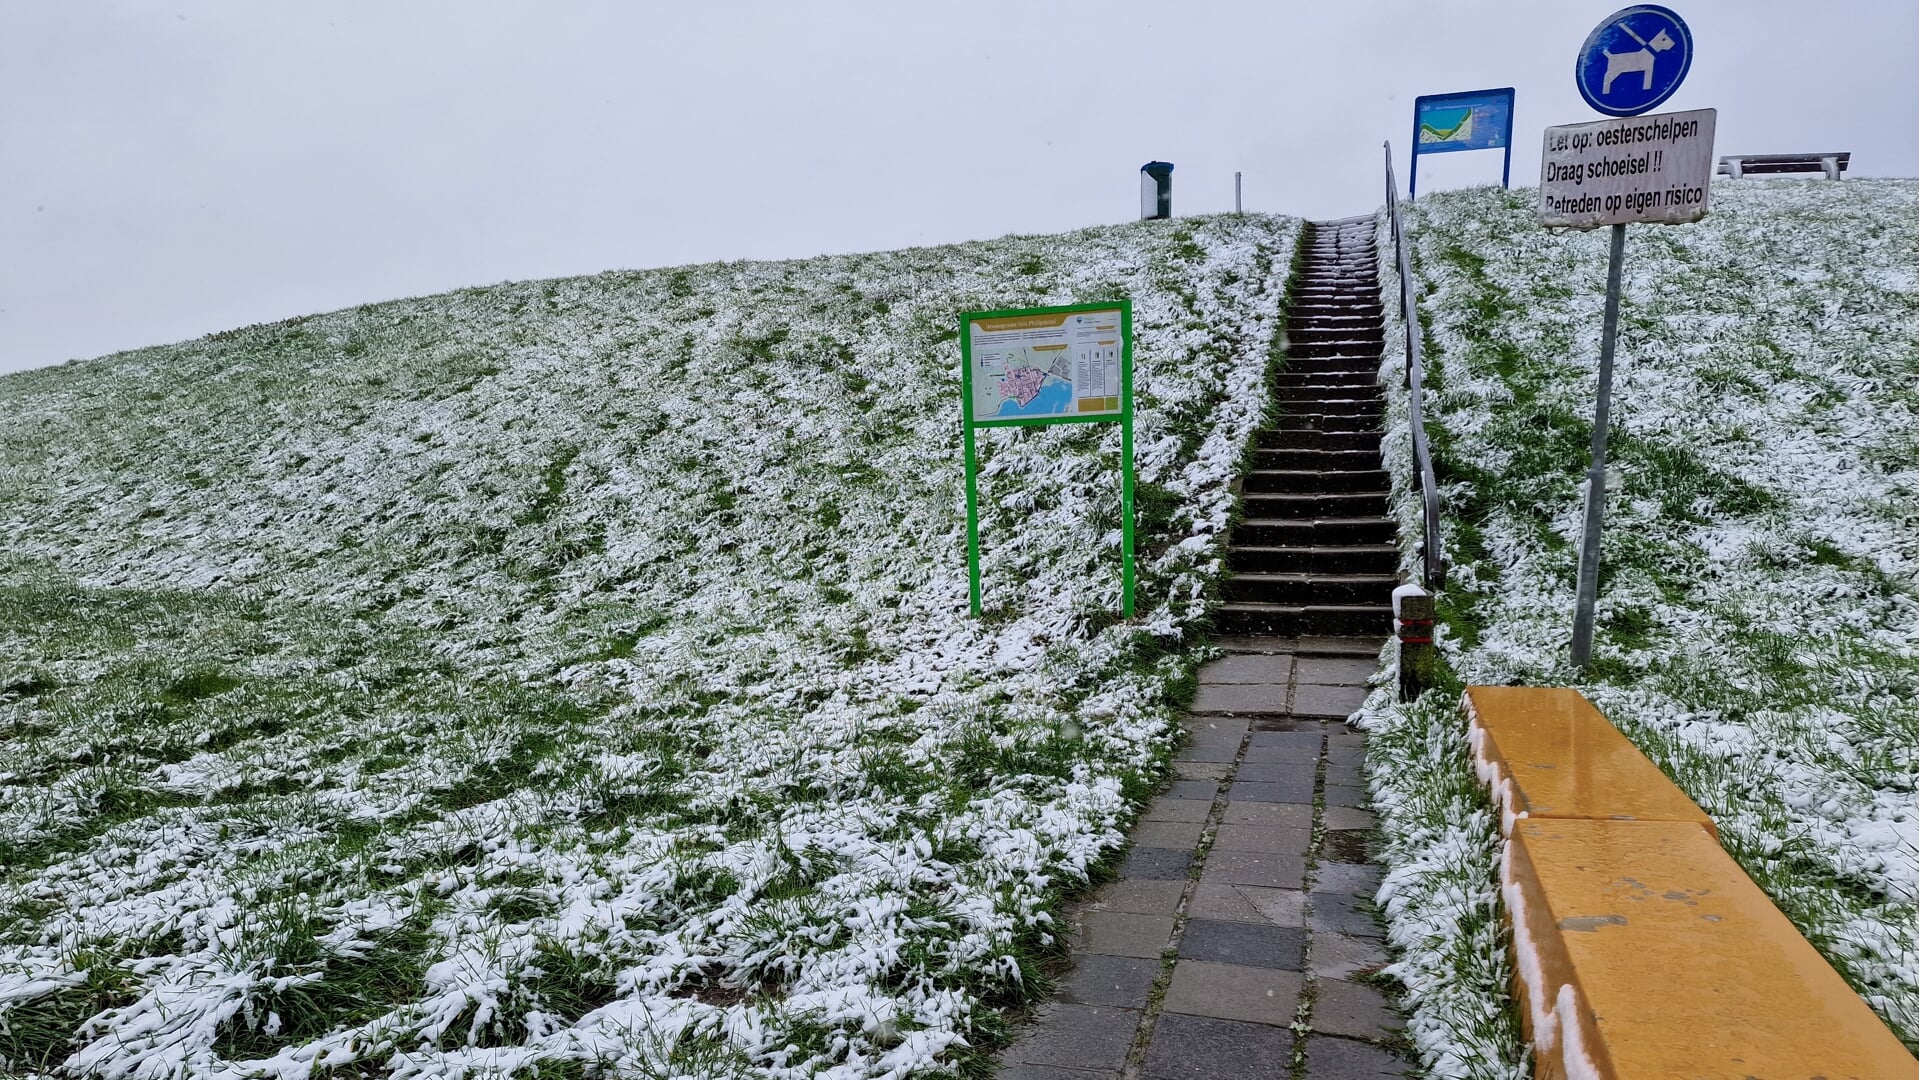 Sneeuw op Tholen (ter illustratie)